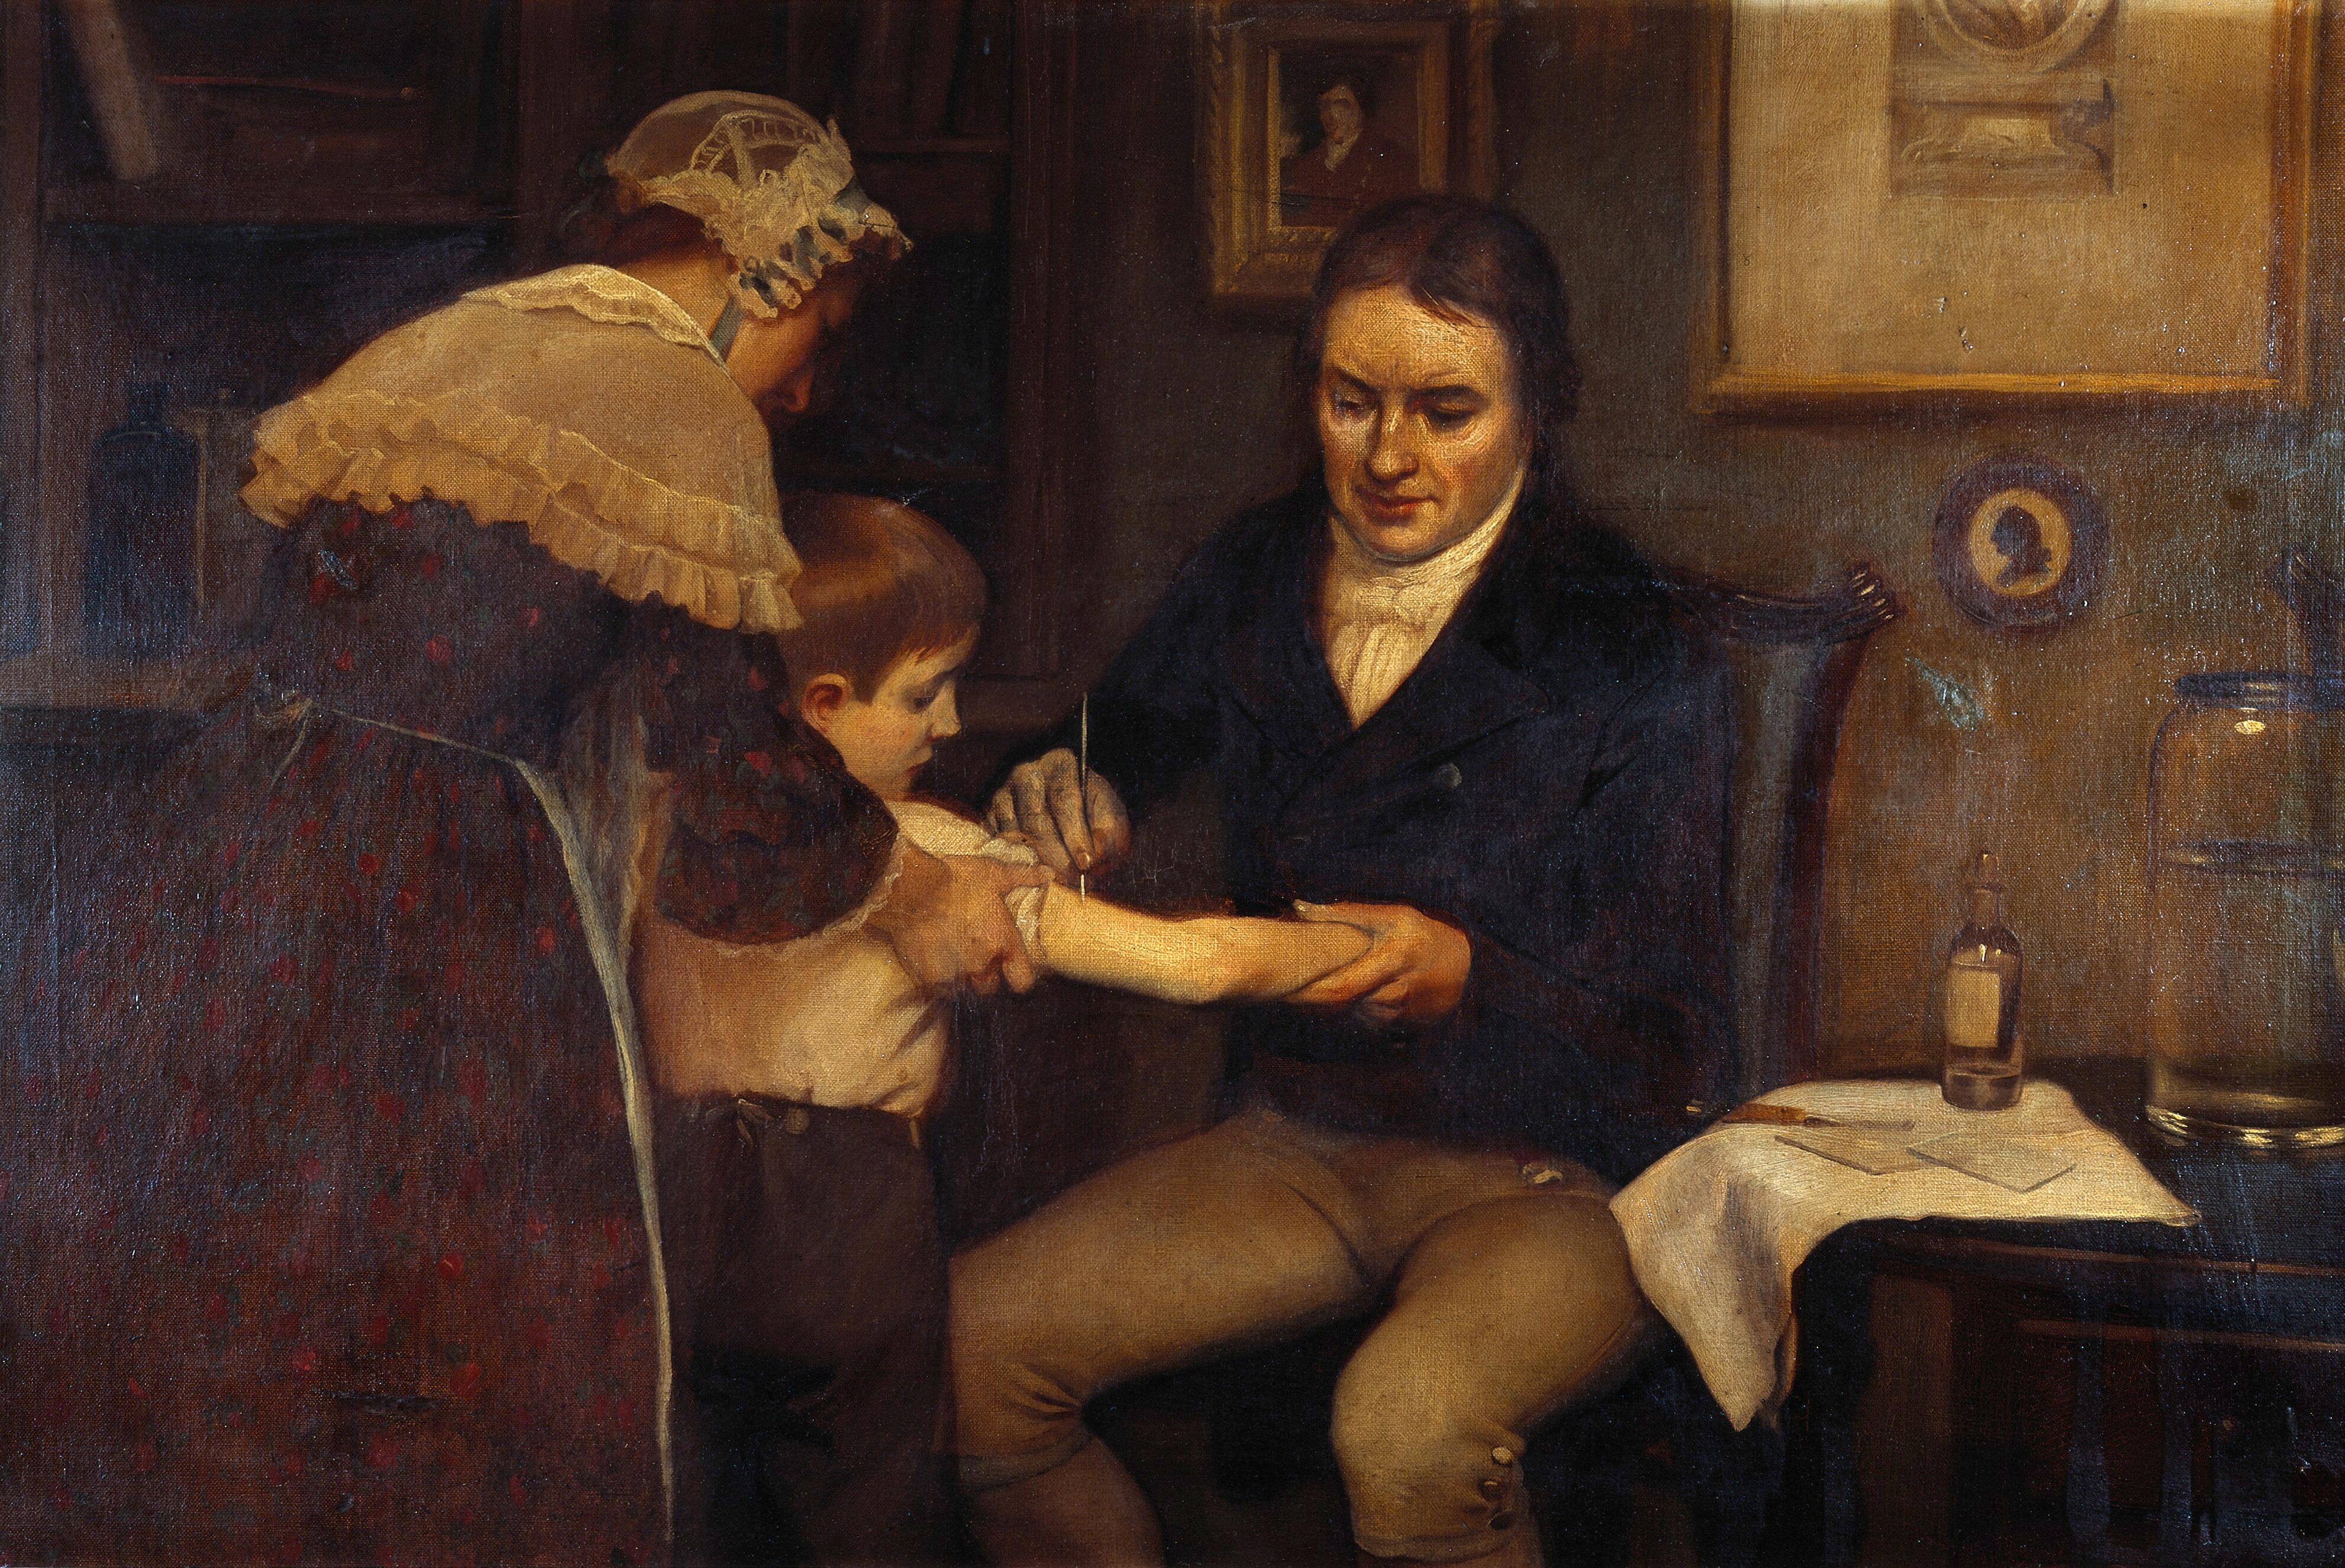 Tavla där pojke i mitten får armen rispad av sittande läkare till höger medan en kvinna till vänster håller i honom.